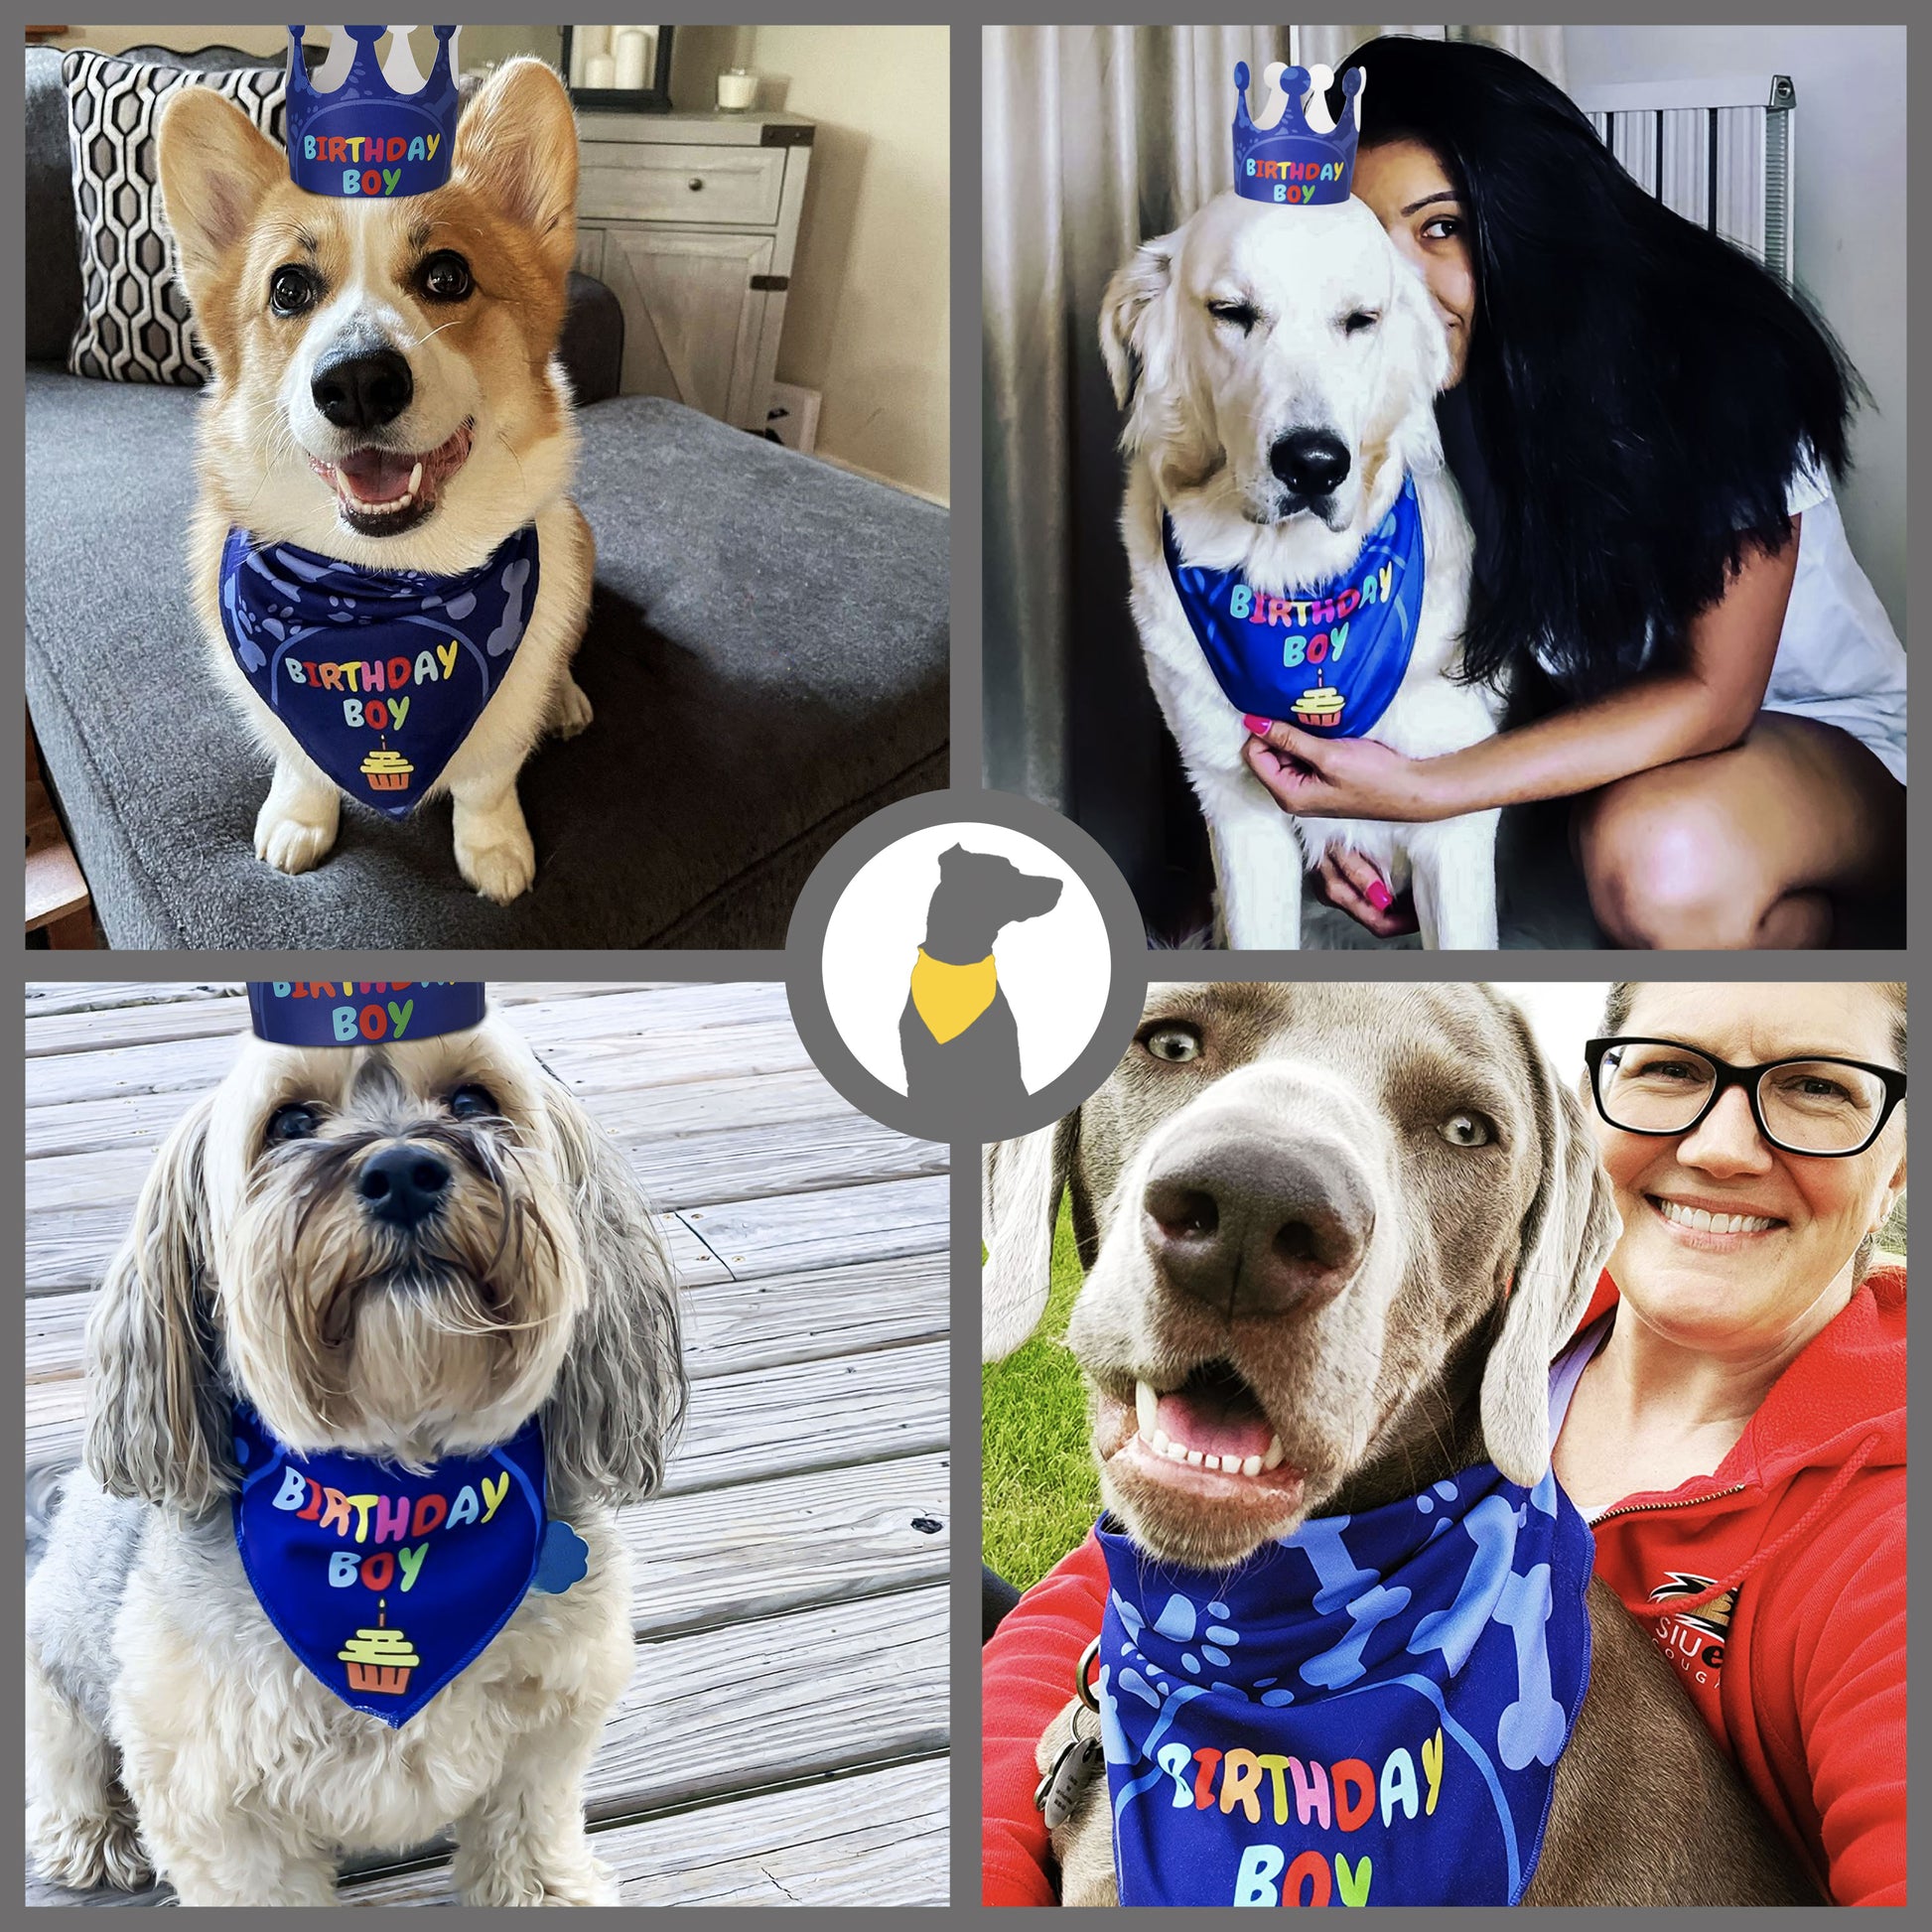 Odi Style Dog Birthday Party Supplies - Boy Dog Birthday Bandana Set